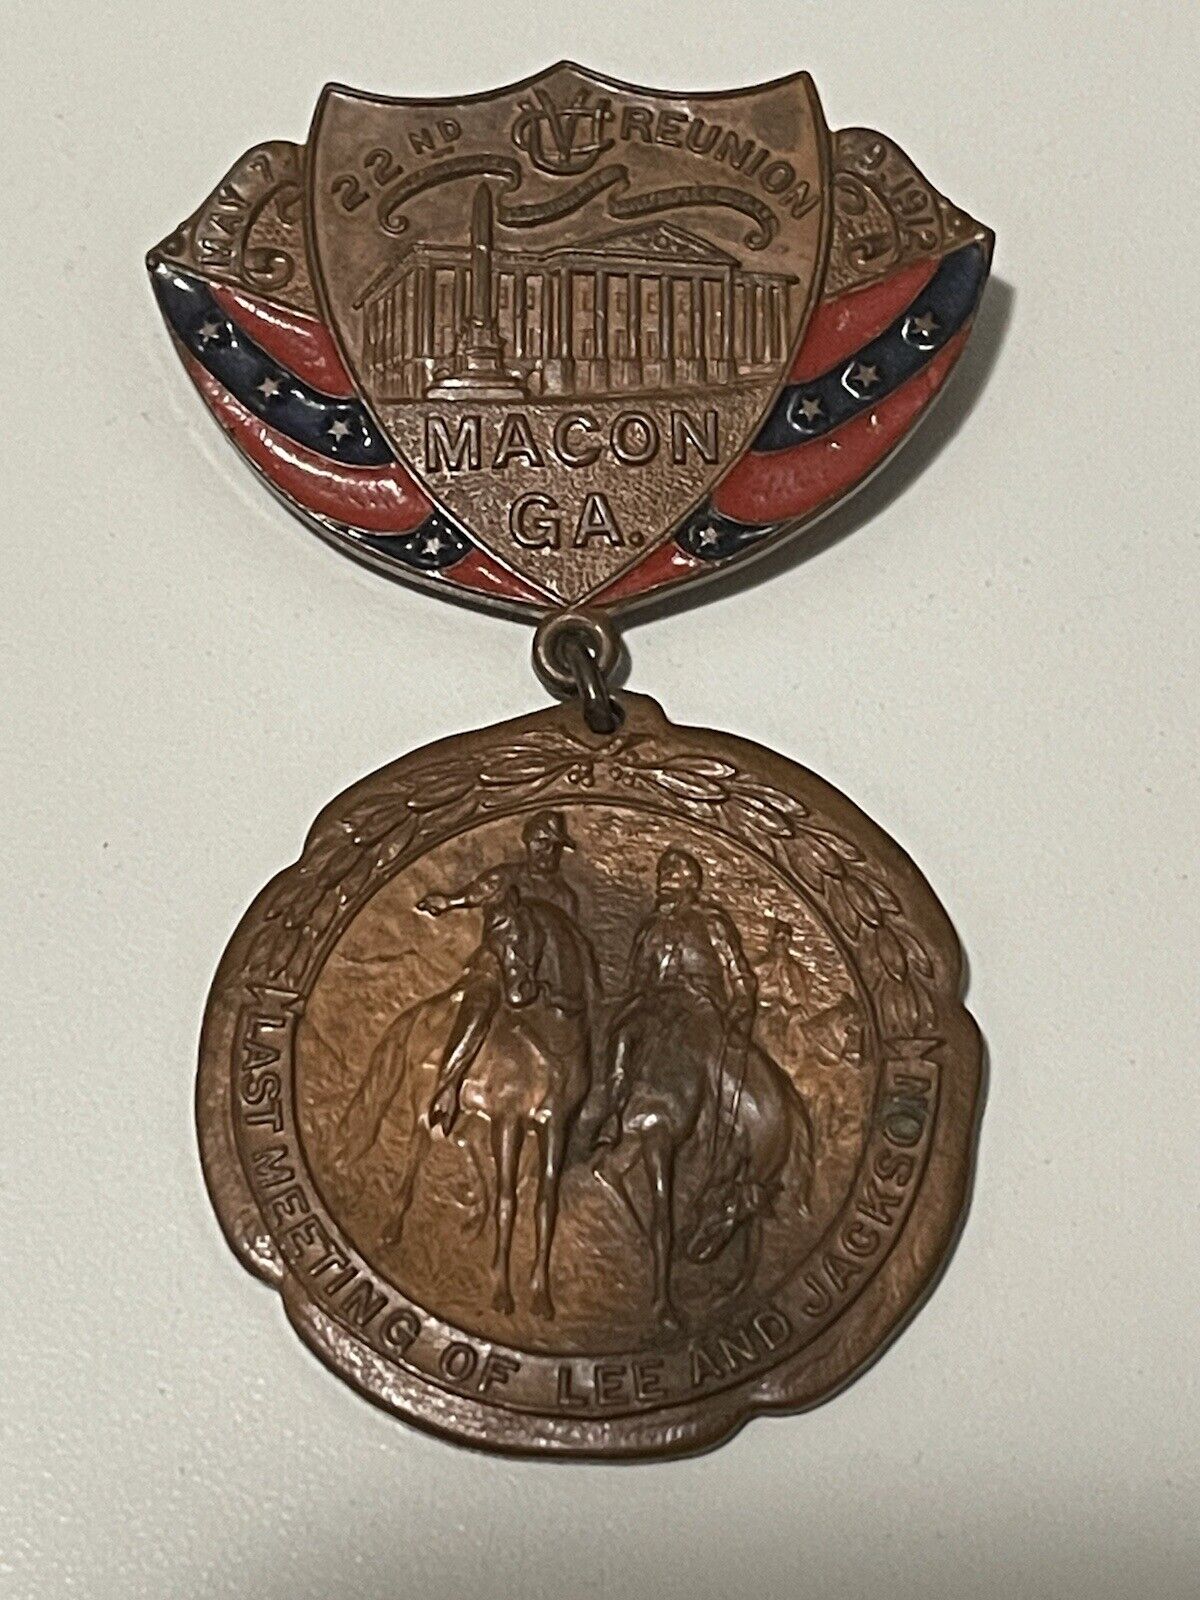 1912 United Confederate Veterans Reunion Badge Macon Georgia UCV